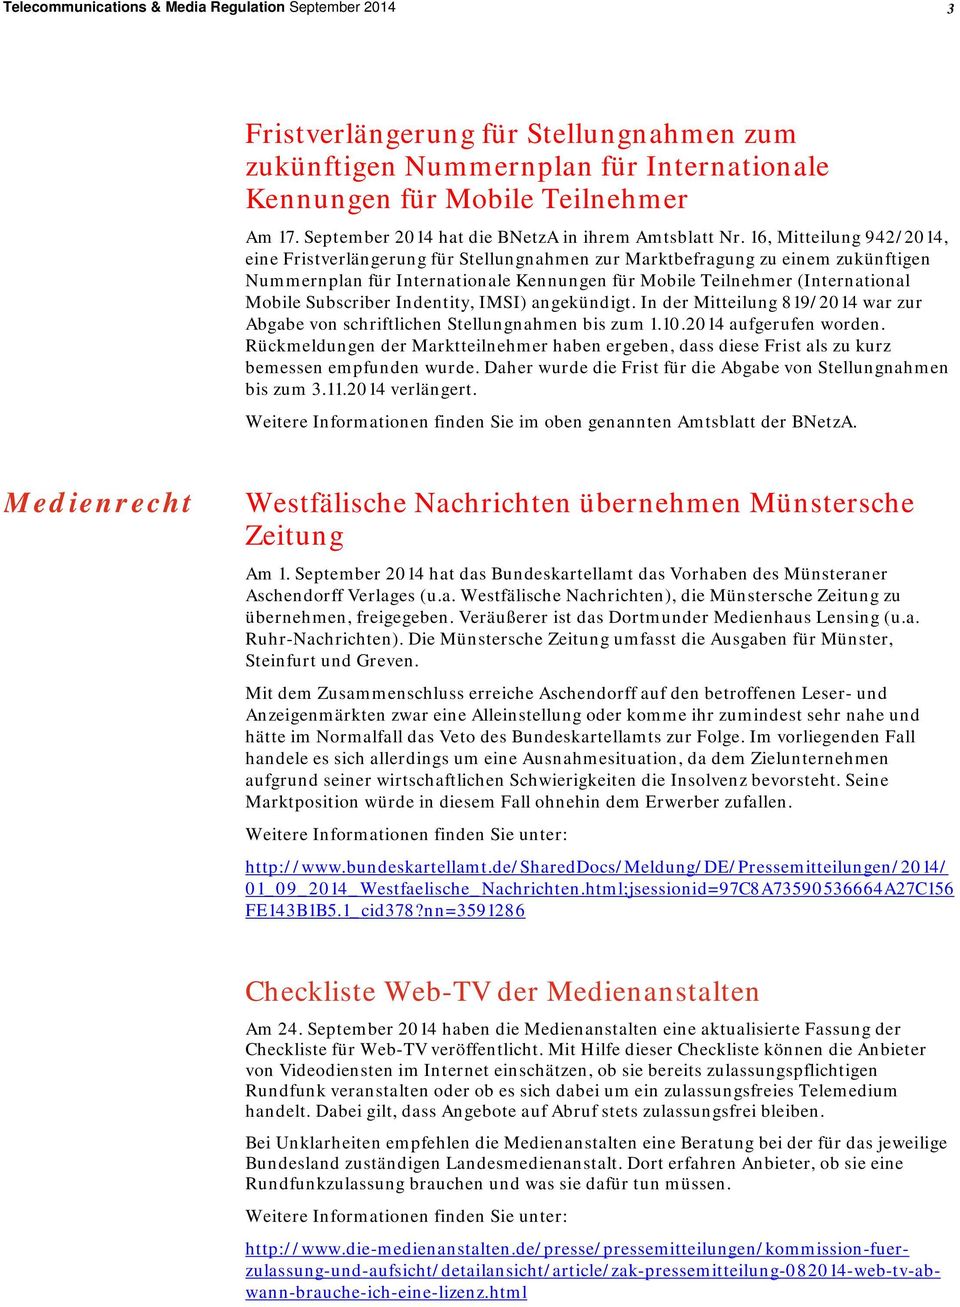 16, Mitteilung 942/2014, eine Fristverlängerung für Stellungnahmen zur Marktbefragung zu einem zukünftigen Nummernplan für Internationale Kennungen für Mobile Teilnehmer (International Mobile